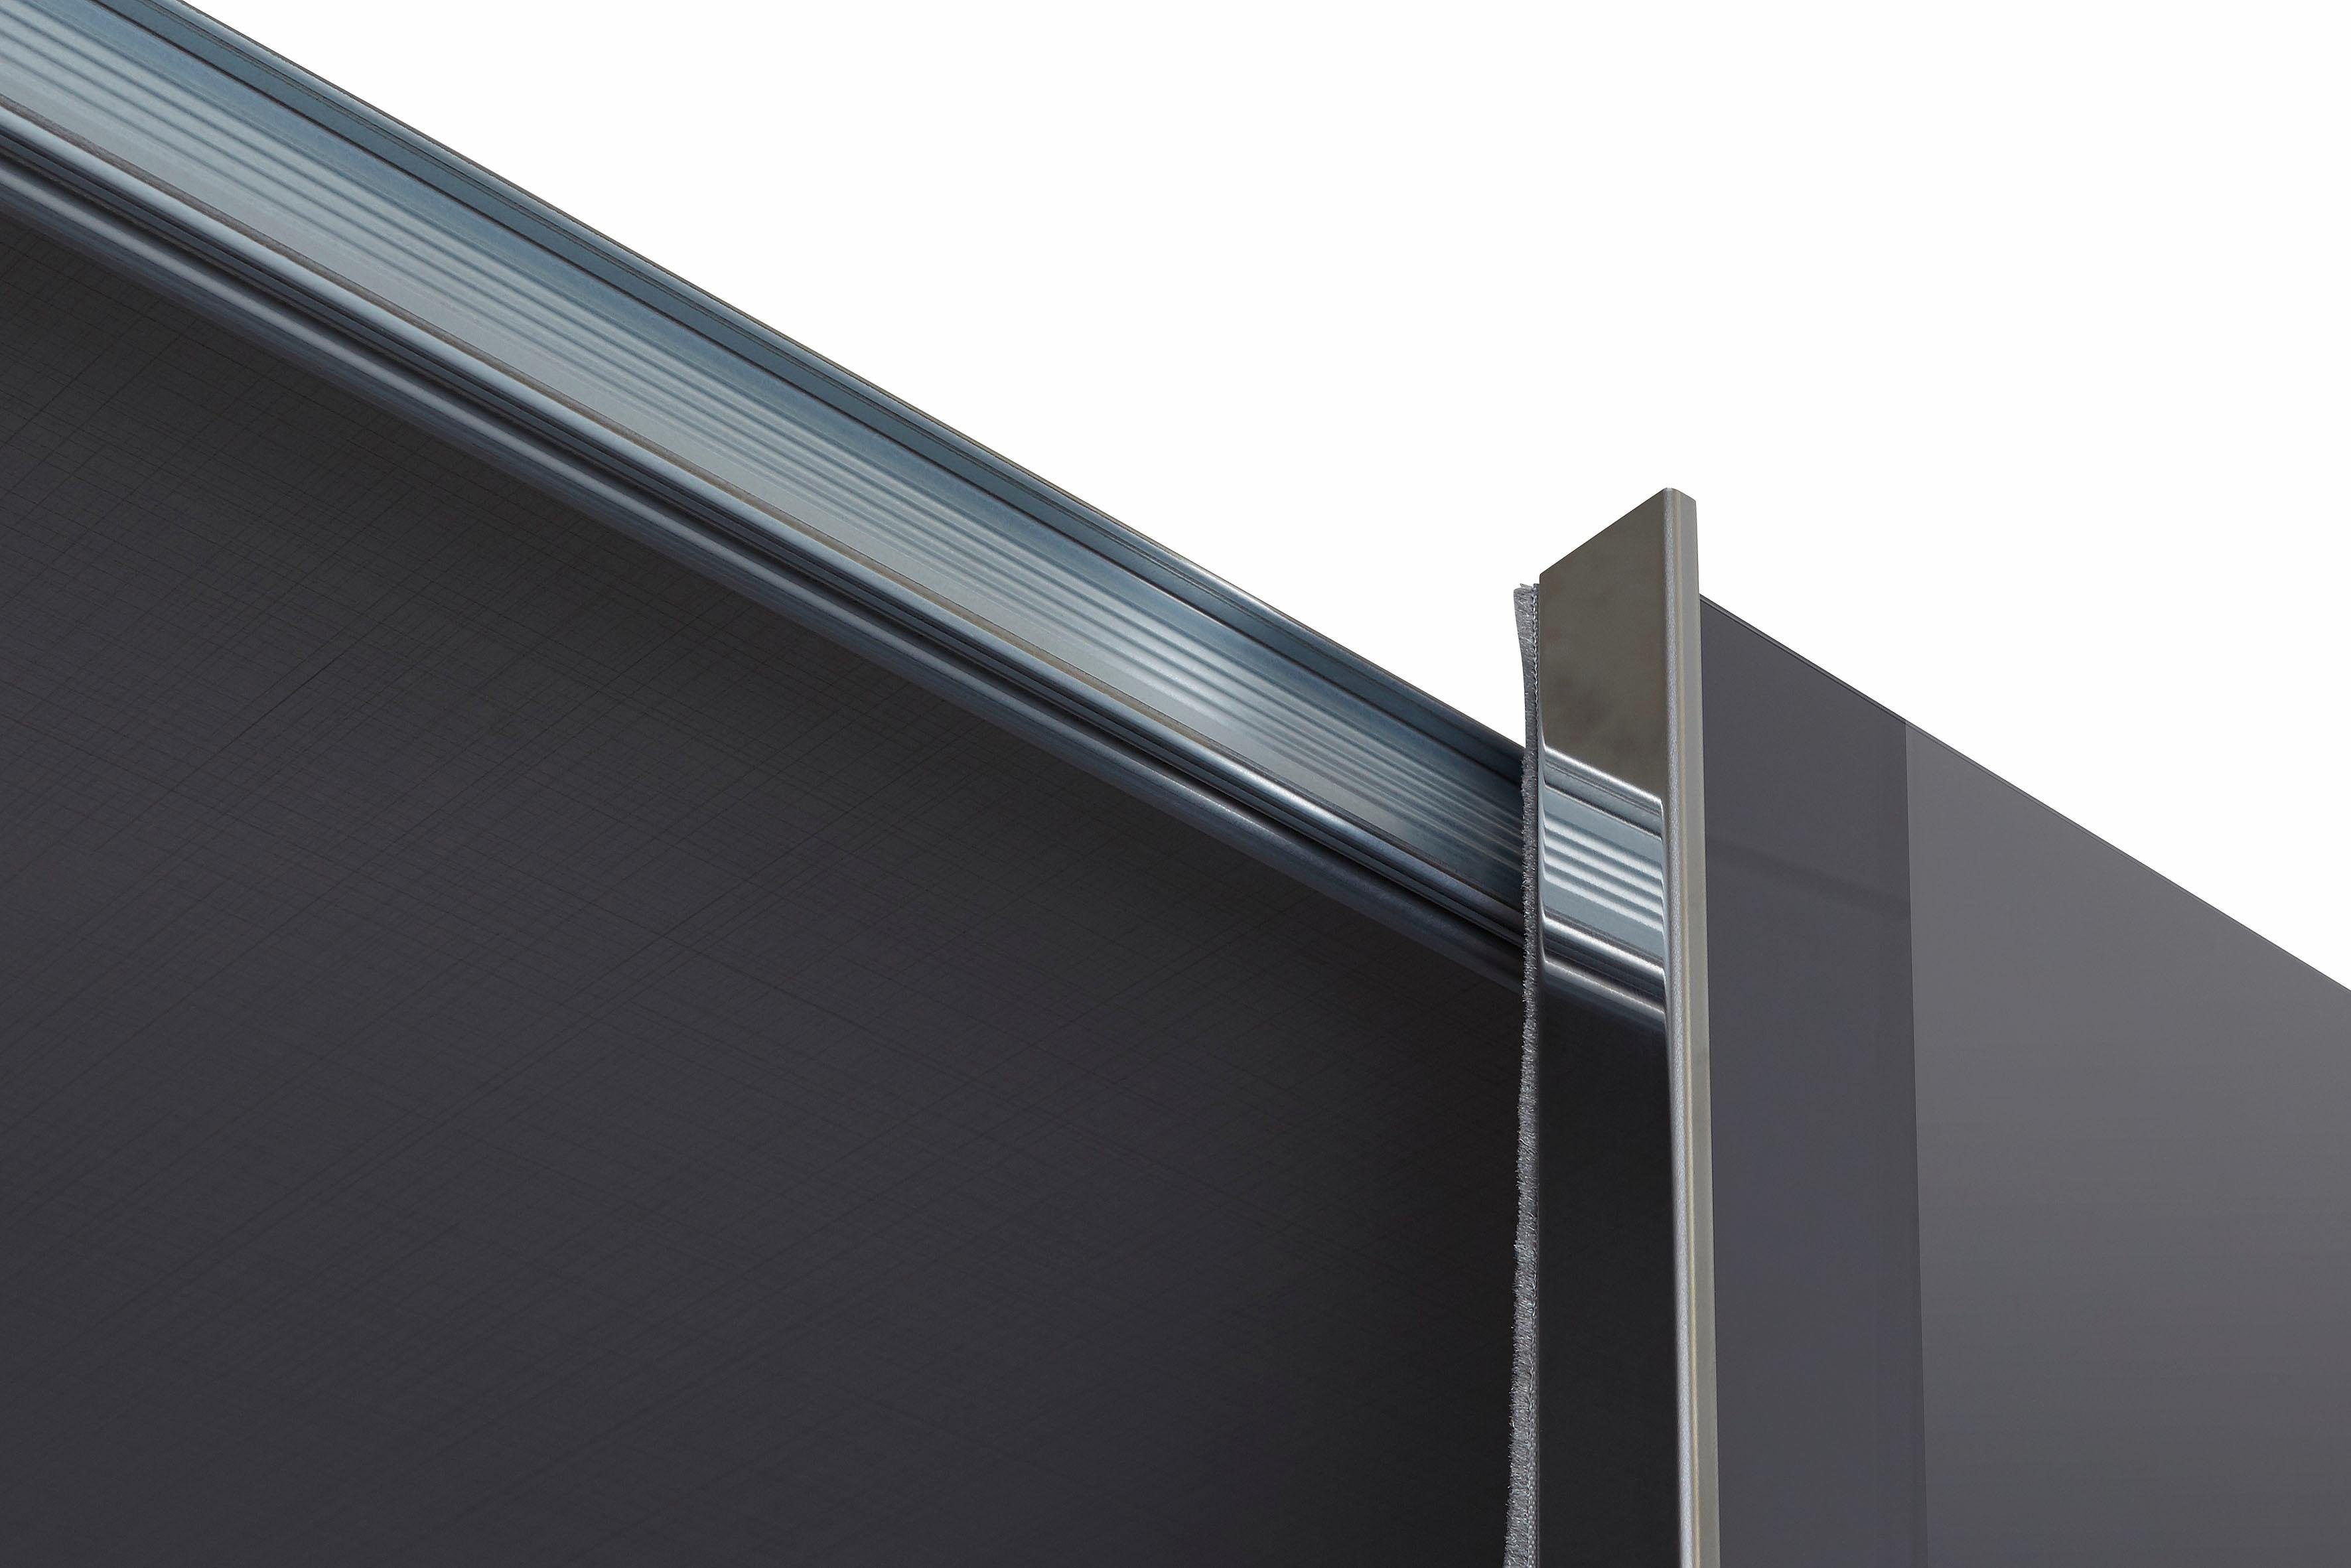 Grauglas plankeneichefarben, mit TV-Element Go Magic Fresh Schwebetürenschrank drehbaren To Außentüren